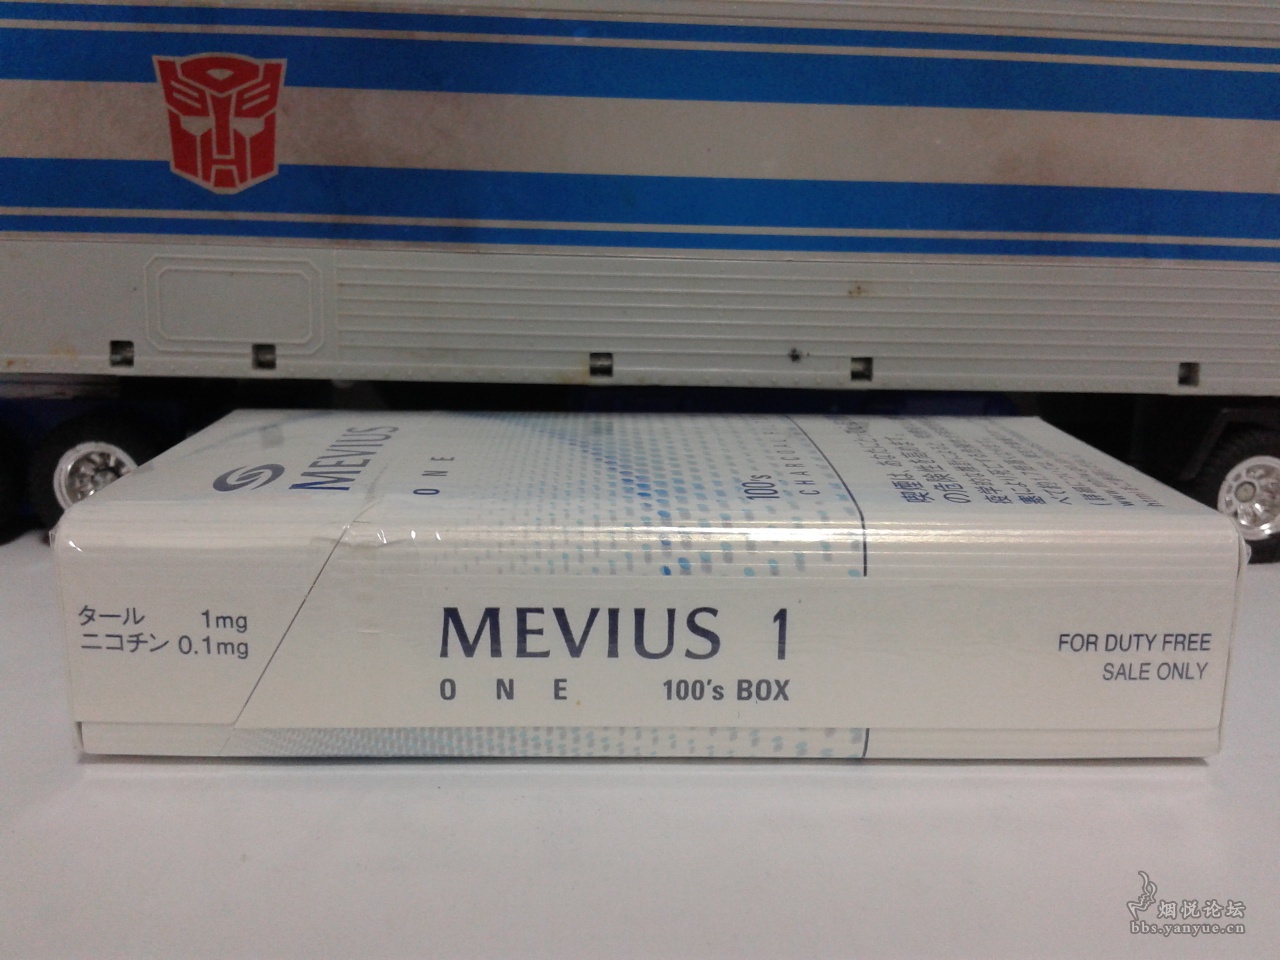 mevius one图片